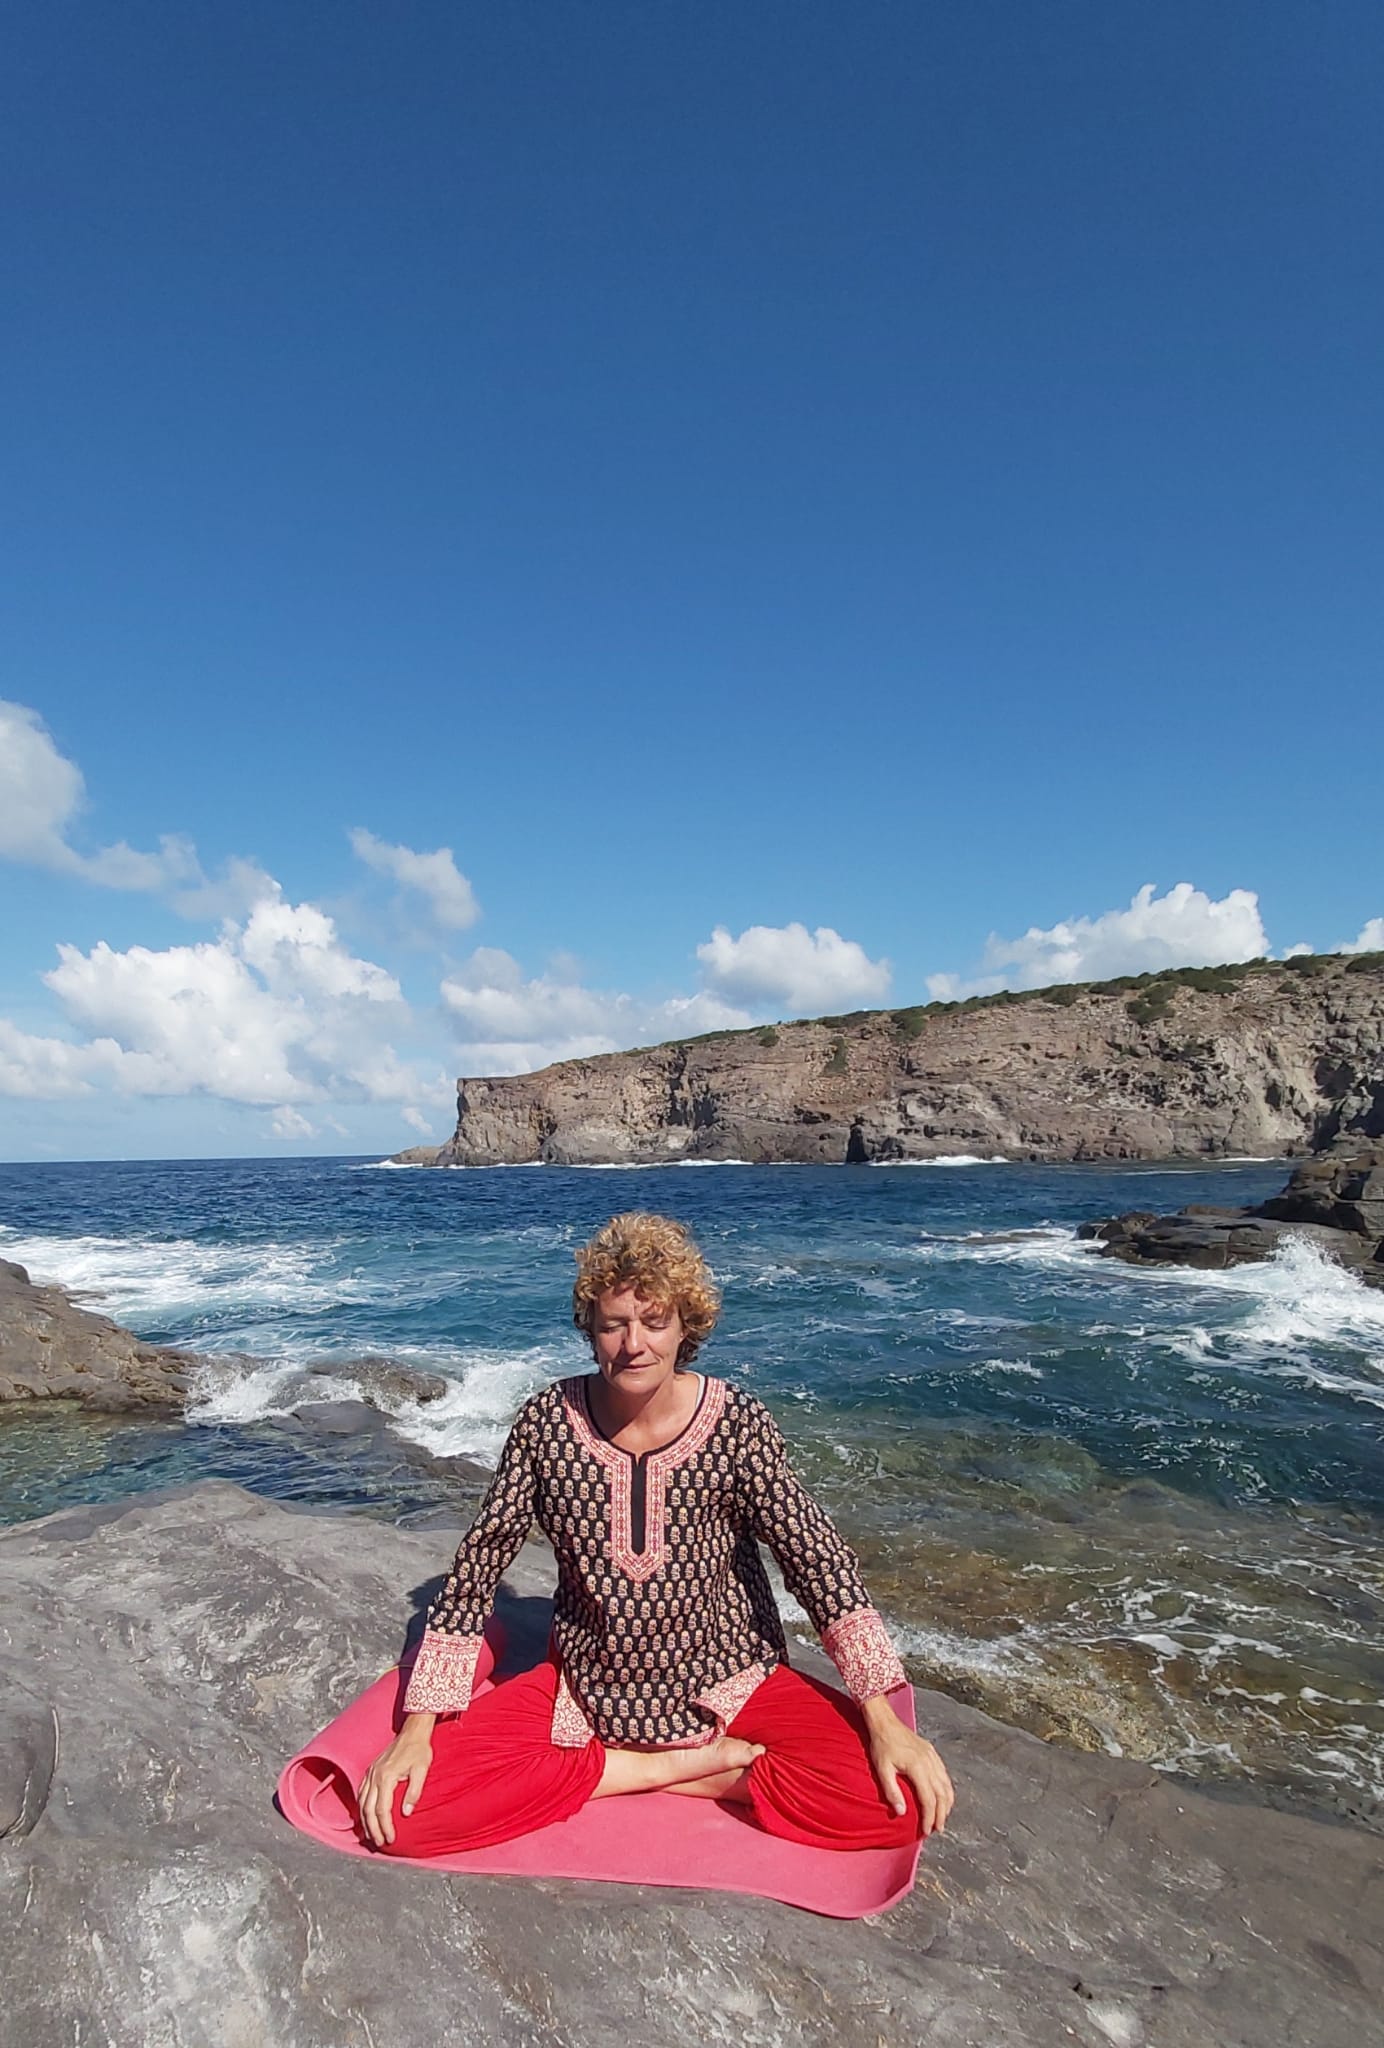 Mediteren aan zee tijdens een retraite op Sardinie.